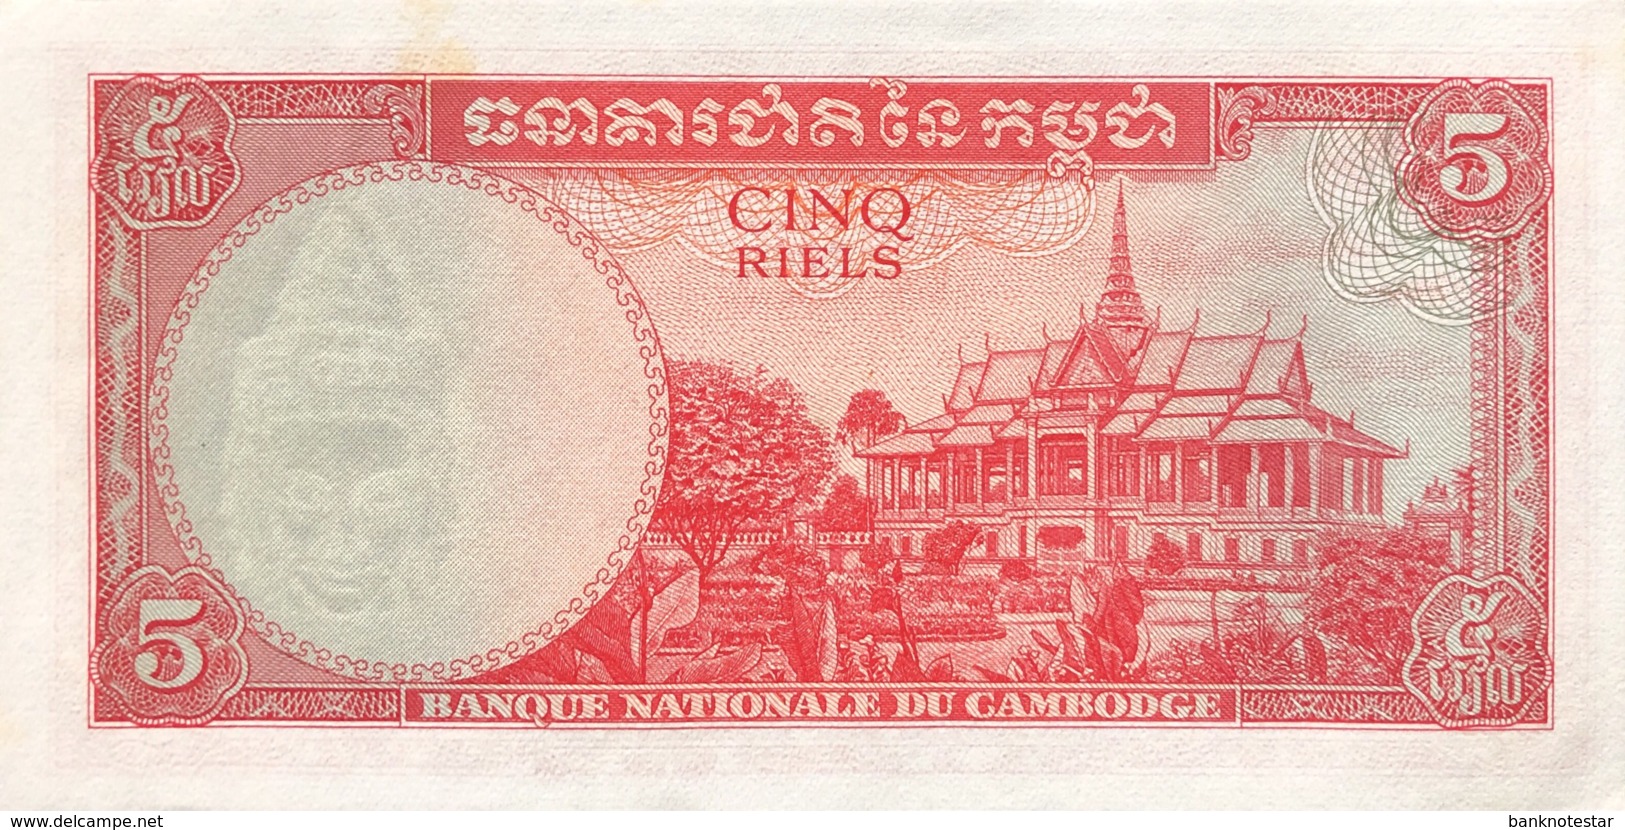 Cambodia 5 Riels, P-10c (1972) - UNC - Cambodia